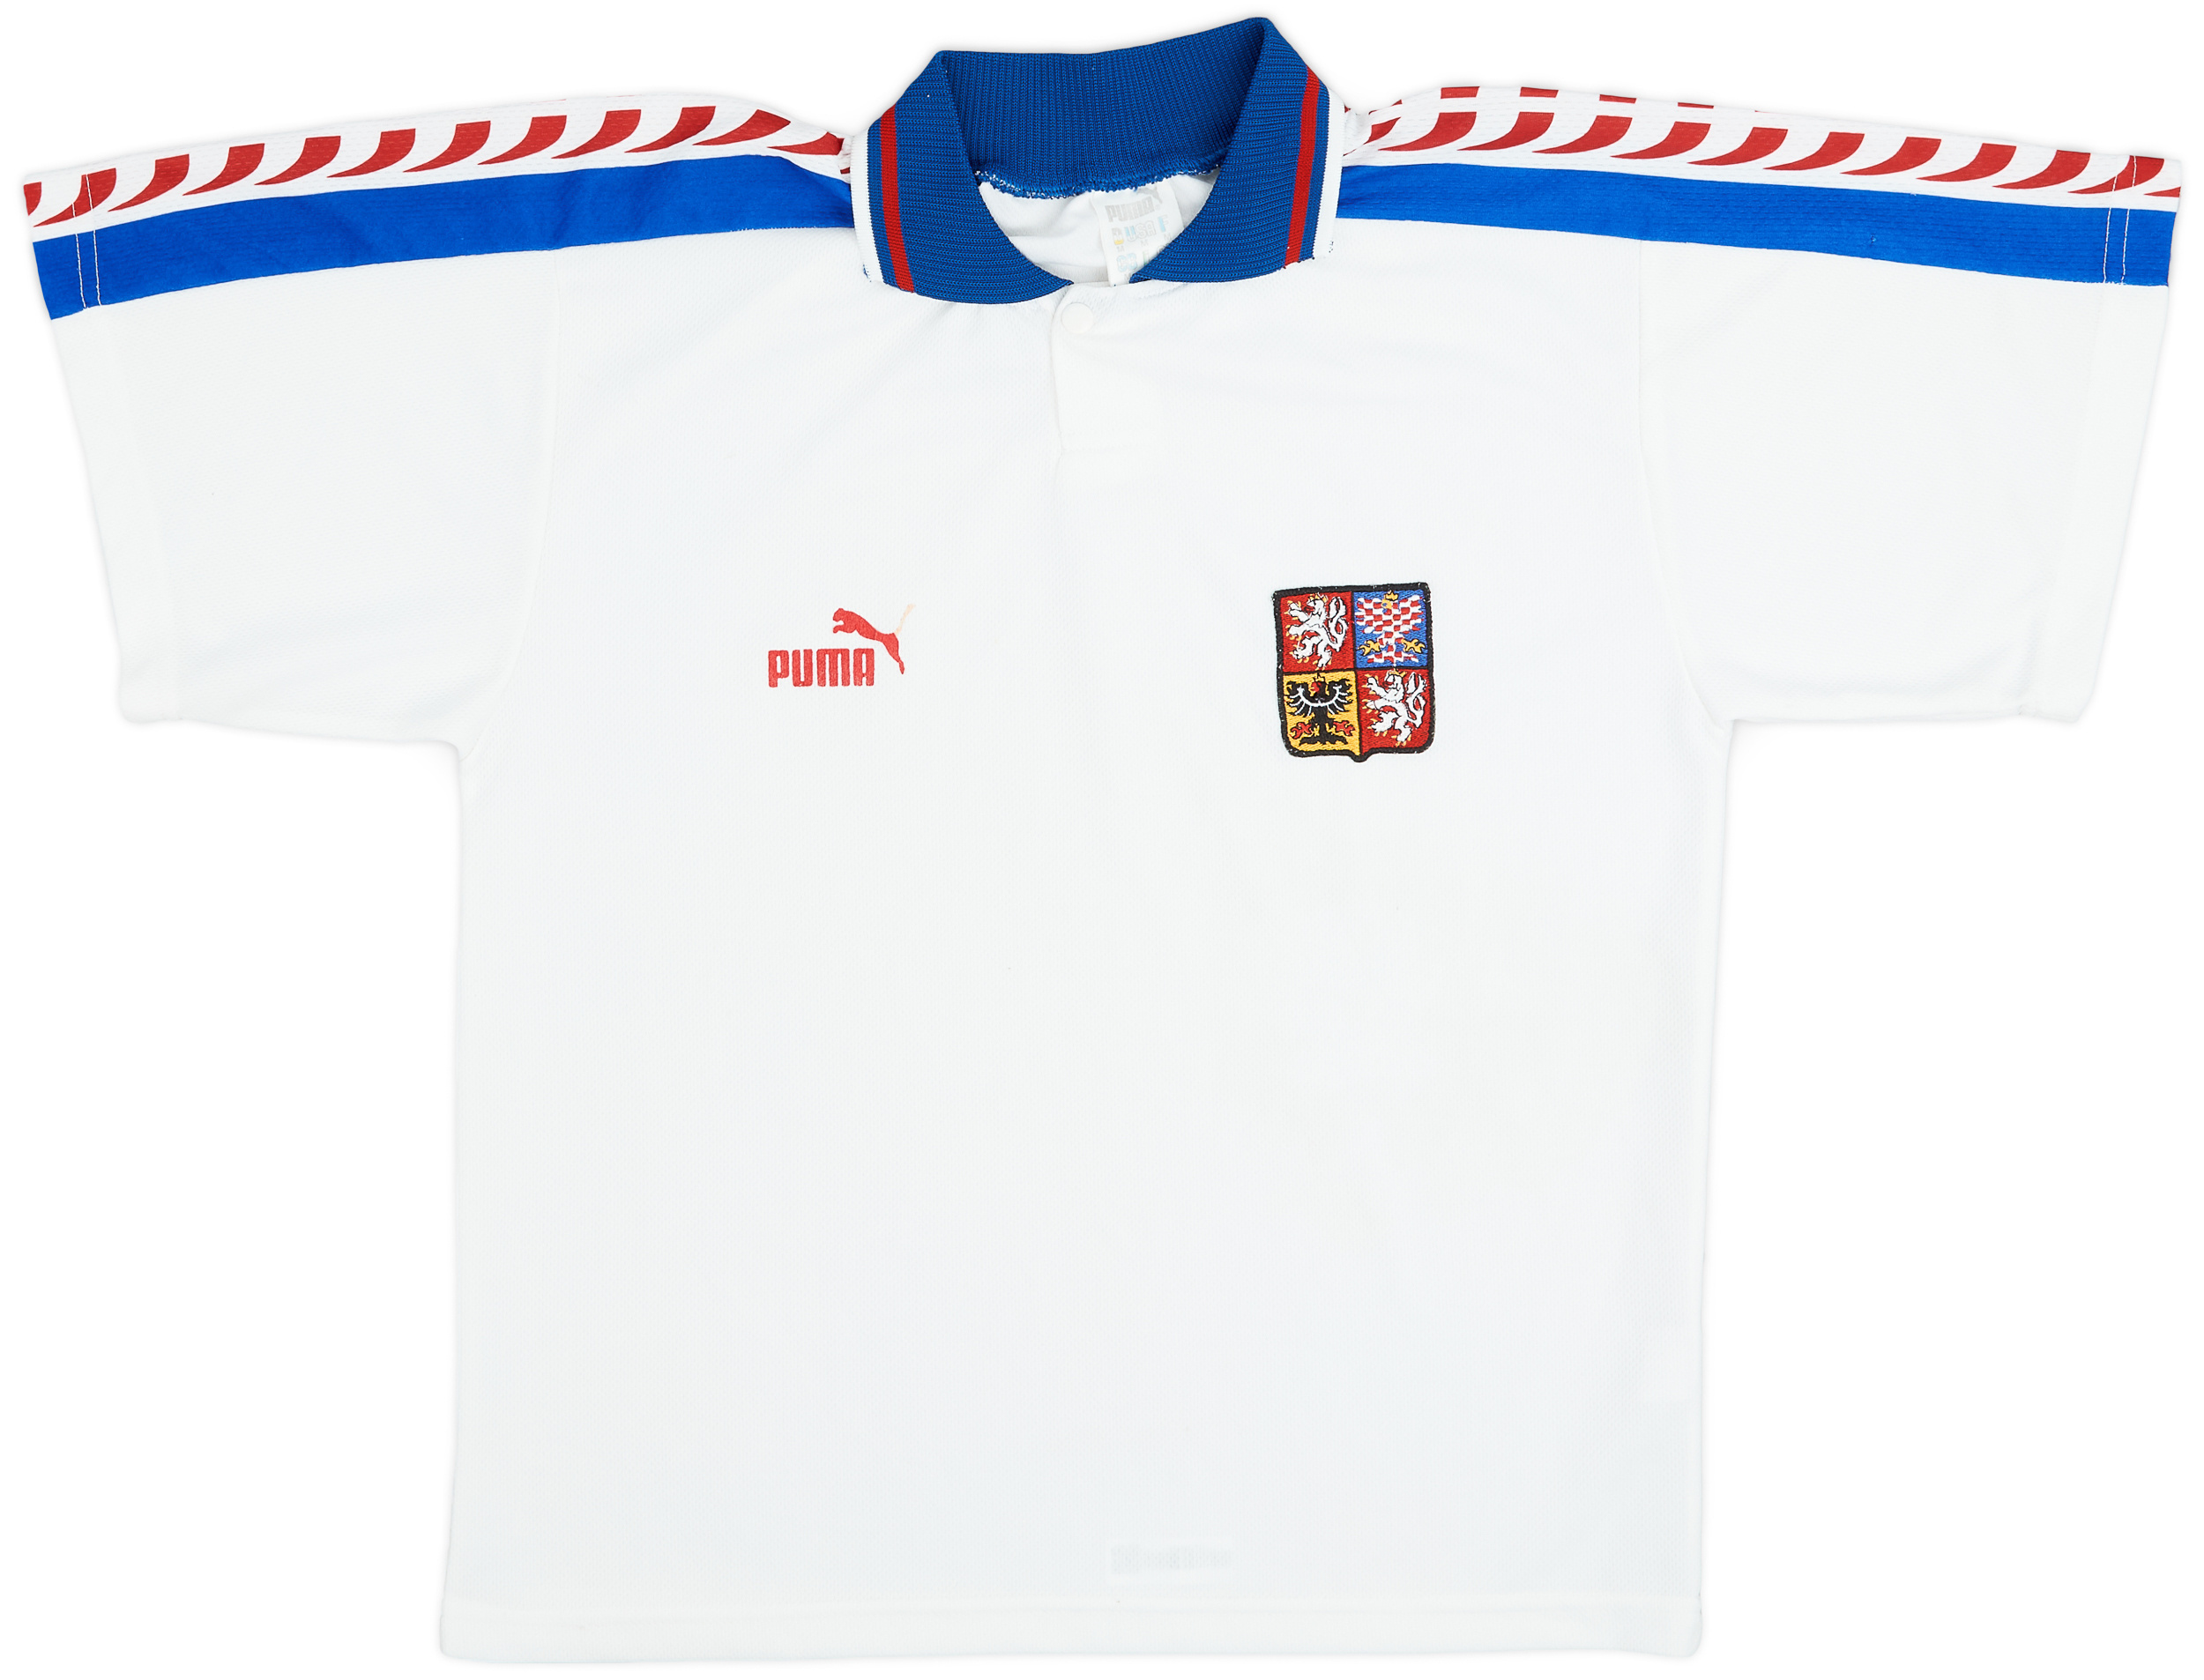 1996-98 Czech Republic Away Shirt - 5/10 - ()